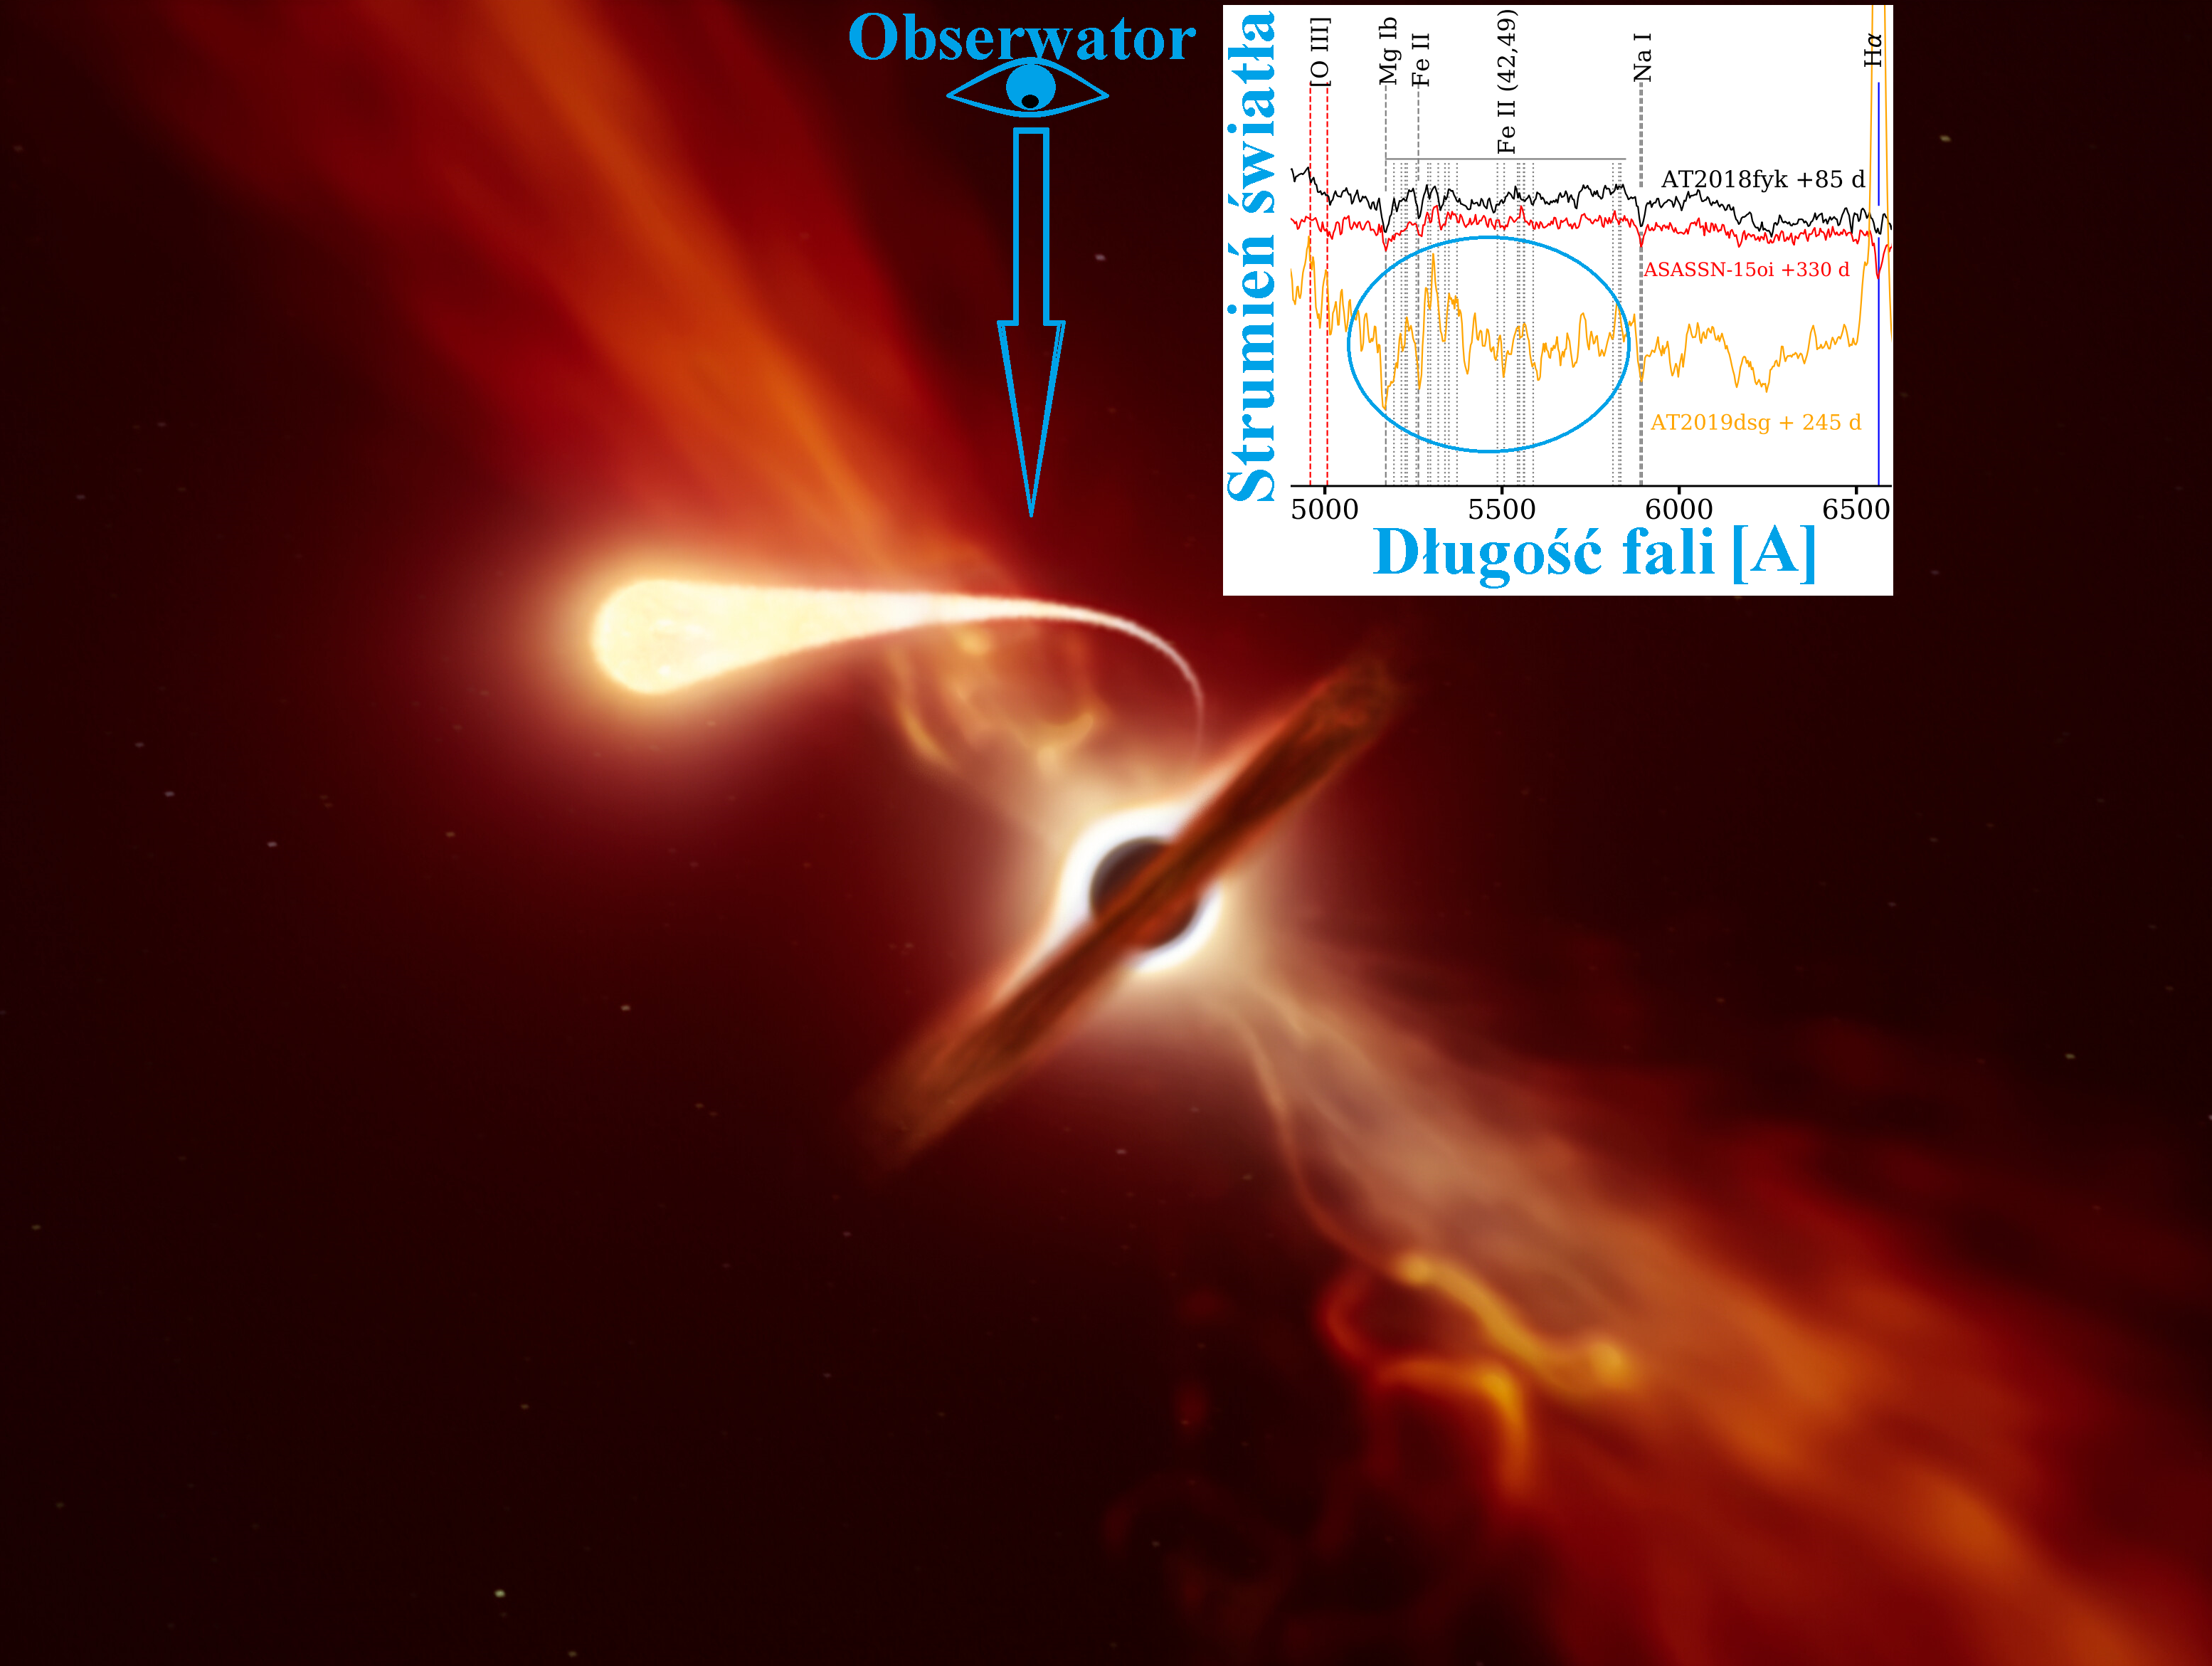 Artystyczna wizualizacja gwiazdy, która doznaje zjawiska spagetyzacji (t.j. rozciągnięta „łezka” na pierwszym planie) pod wpływem sił pływowych supermasywnej czarnej dziury, która jest widoczna w tle. Supermasywna czarna dziura jest otoczona dyskiem gazowym i pyłowym widoczne z boku. Prostopadle do płaszczyzny dysku akrecyjnego wypływają dżety z prędkościami relatywistycznymi. W dodatkowym panelu zaznaczono niebieskim owalem wąskie linie absorpcyjne żelaza w widmie zjawiska tymczasowego AT 2019dsg wykonanego 245 dnia od odkrycia. Dla porównania pokazano również ten sam fragment widma dla dwóch innych zjawisk TDE, ale tutaj nie ma takich struktur. Niebieska strzałka pokazuje prawdopodobny kierunek obserwacji z Ziemi, by dla zjawiska AT 2019dsg były widoczne linie absorpcyjne, powstające w strudze materii pozostałej po gwieździe. Opracowanie na podstawie omawianej publikacji oraz ESO/M. Kornmesser